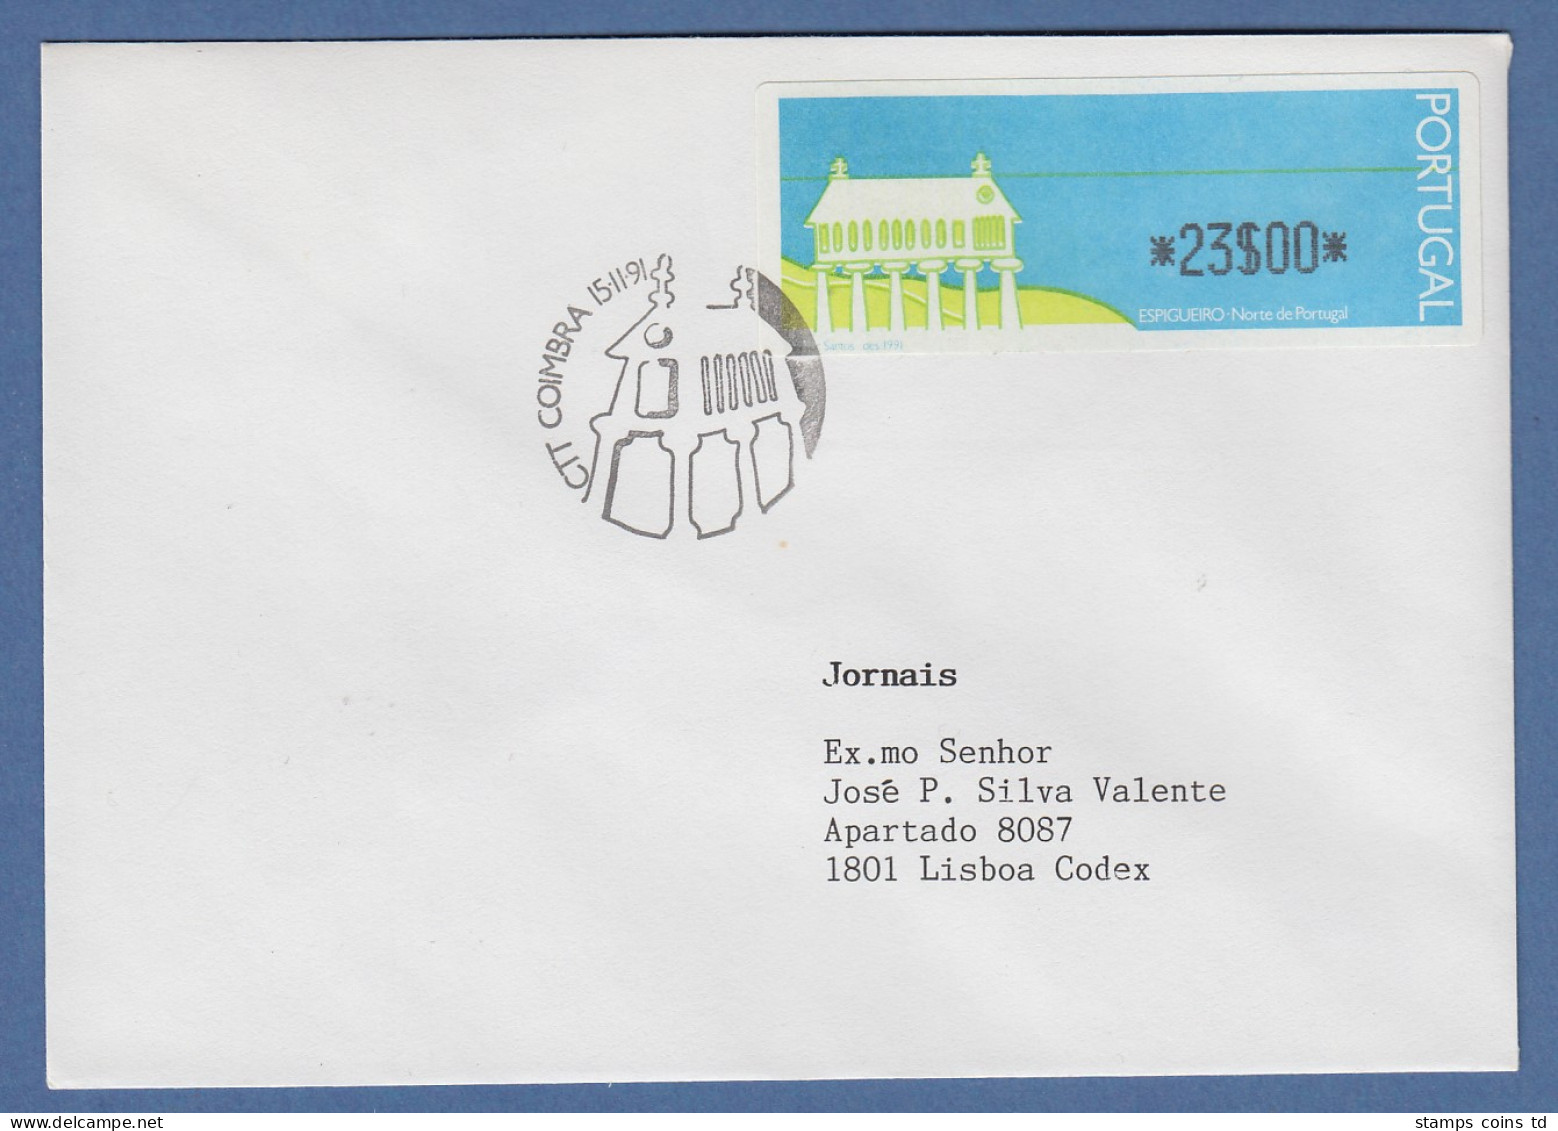 Portugal 1991 ATM Espigueiro Mi.-Nr. 3 Wert 23$00 Auf FDC Mit ET-O Coimbra - Timbres De Distributeurs [ATM]